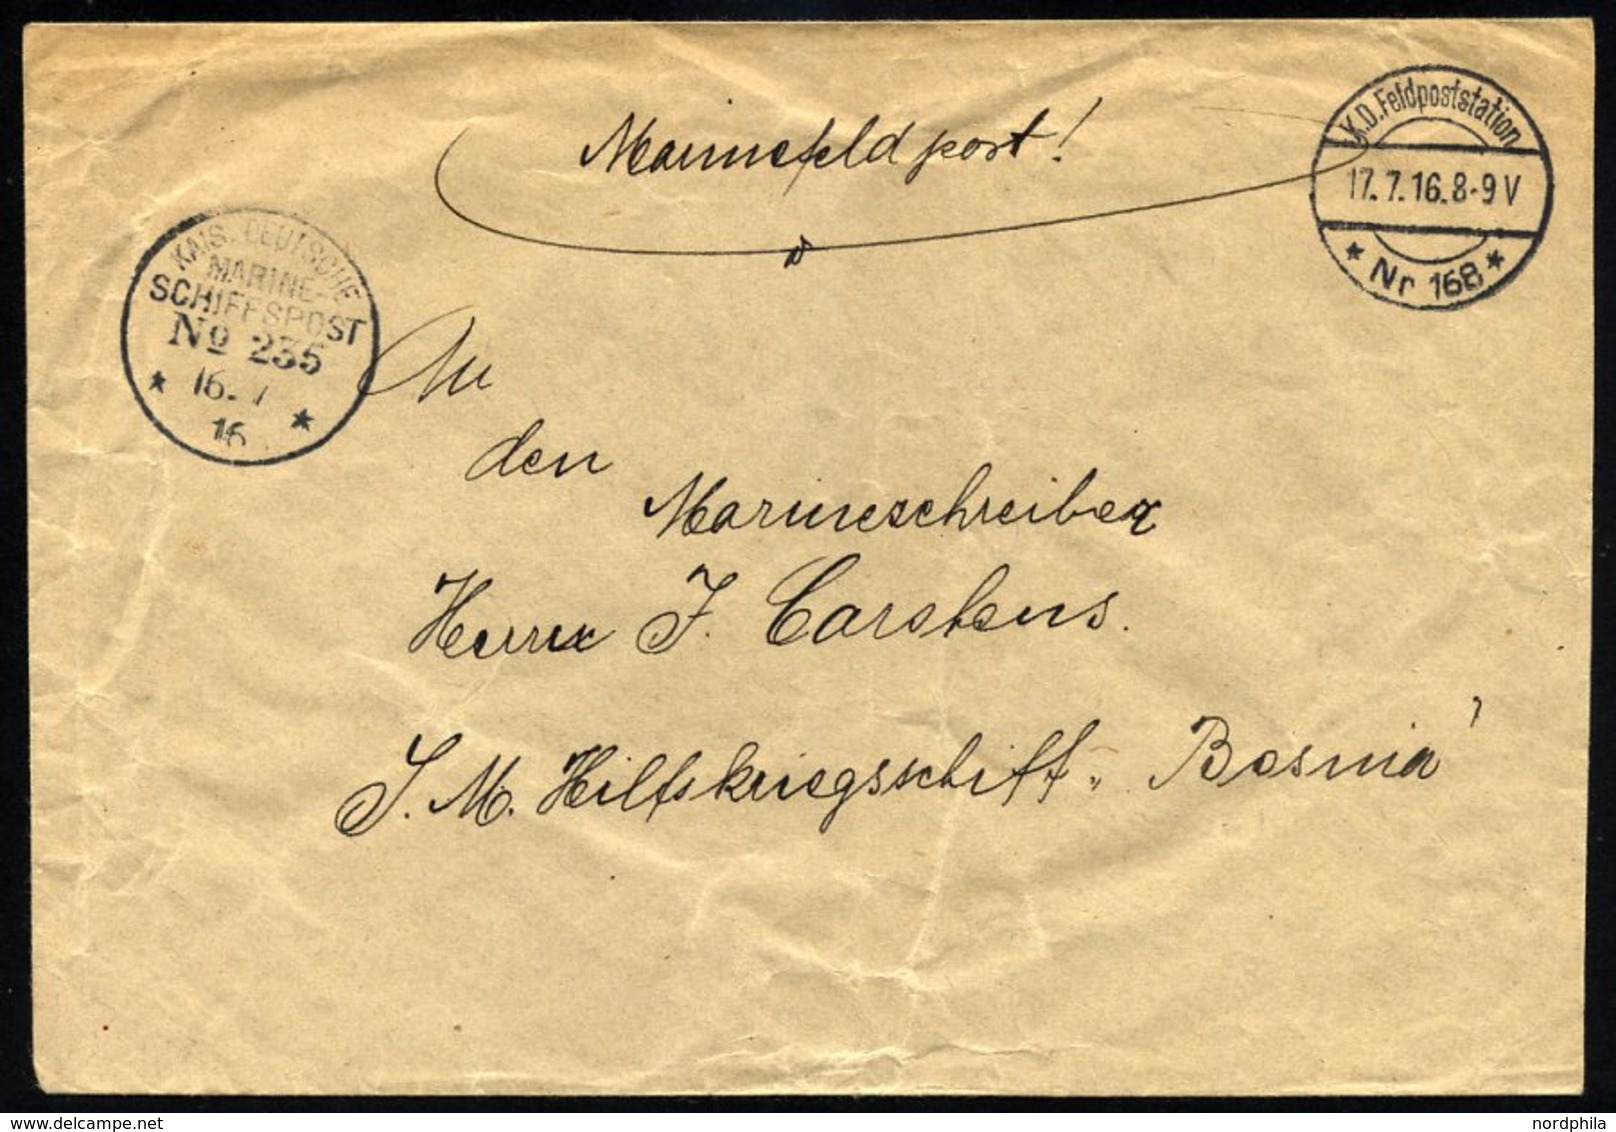 MSP VON 1914 - 1918 235 (2. Halbflottille Der Handelsschutzflottille), 16.7.1916, Feldpost-Stationsstempel Nr. 168, Mari - Schiffahrt